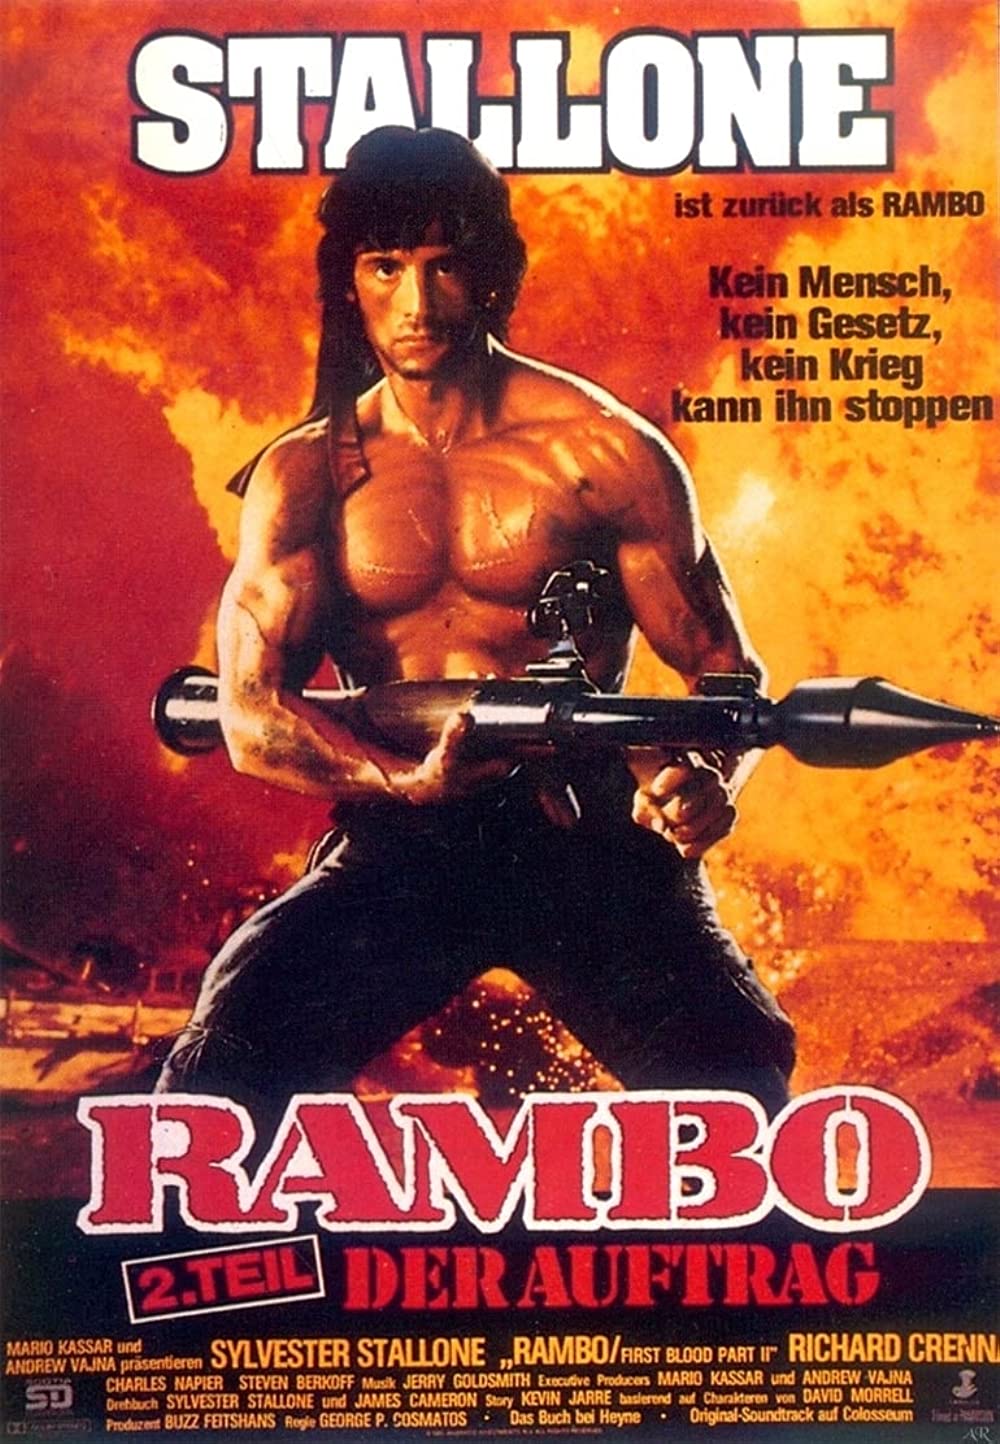 Filmbeschreibung zu Rambo: First Blood Part II